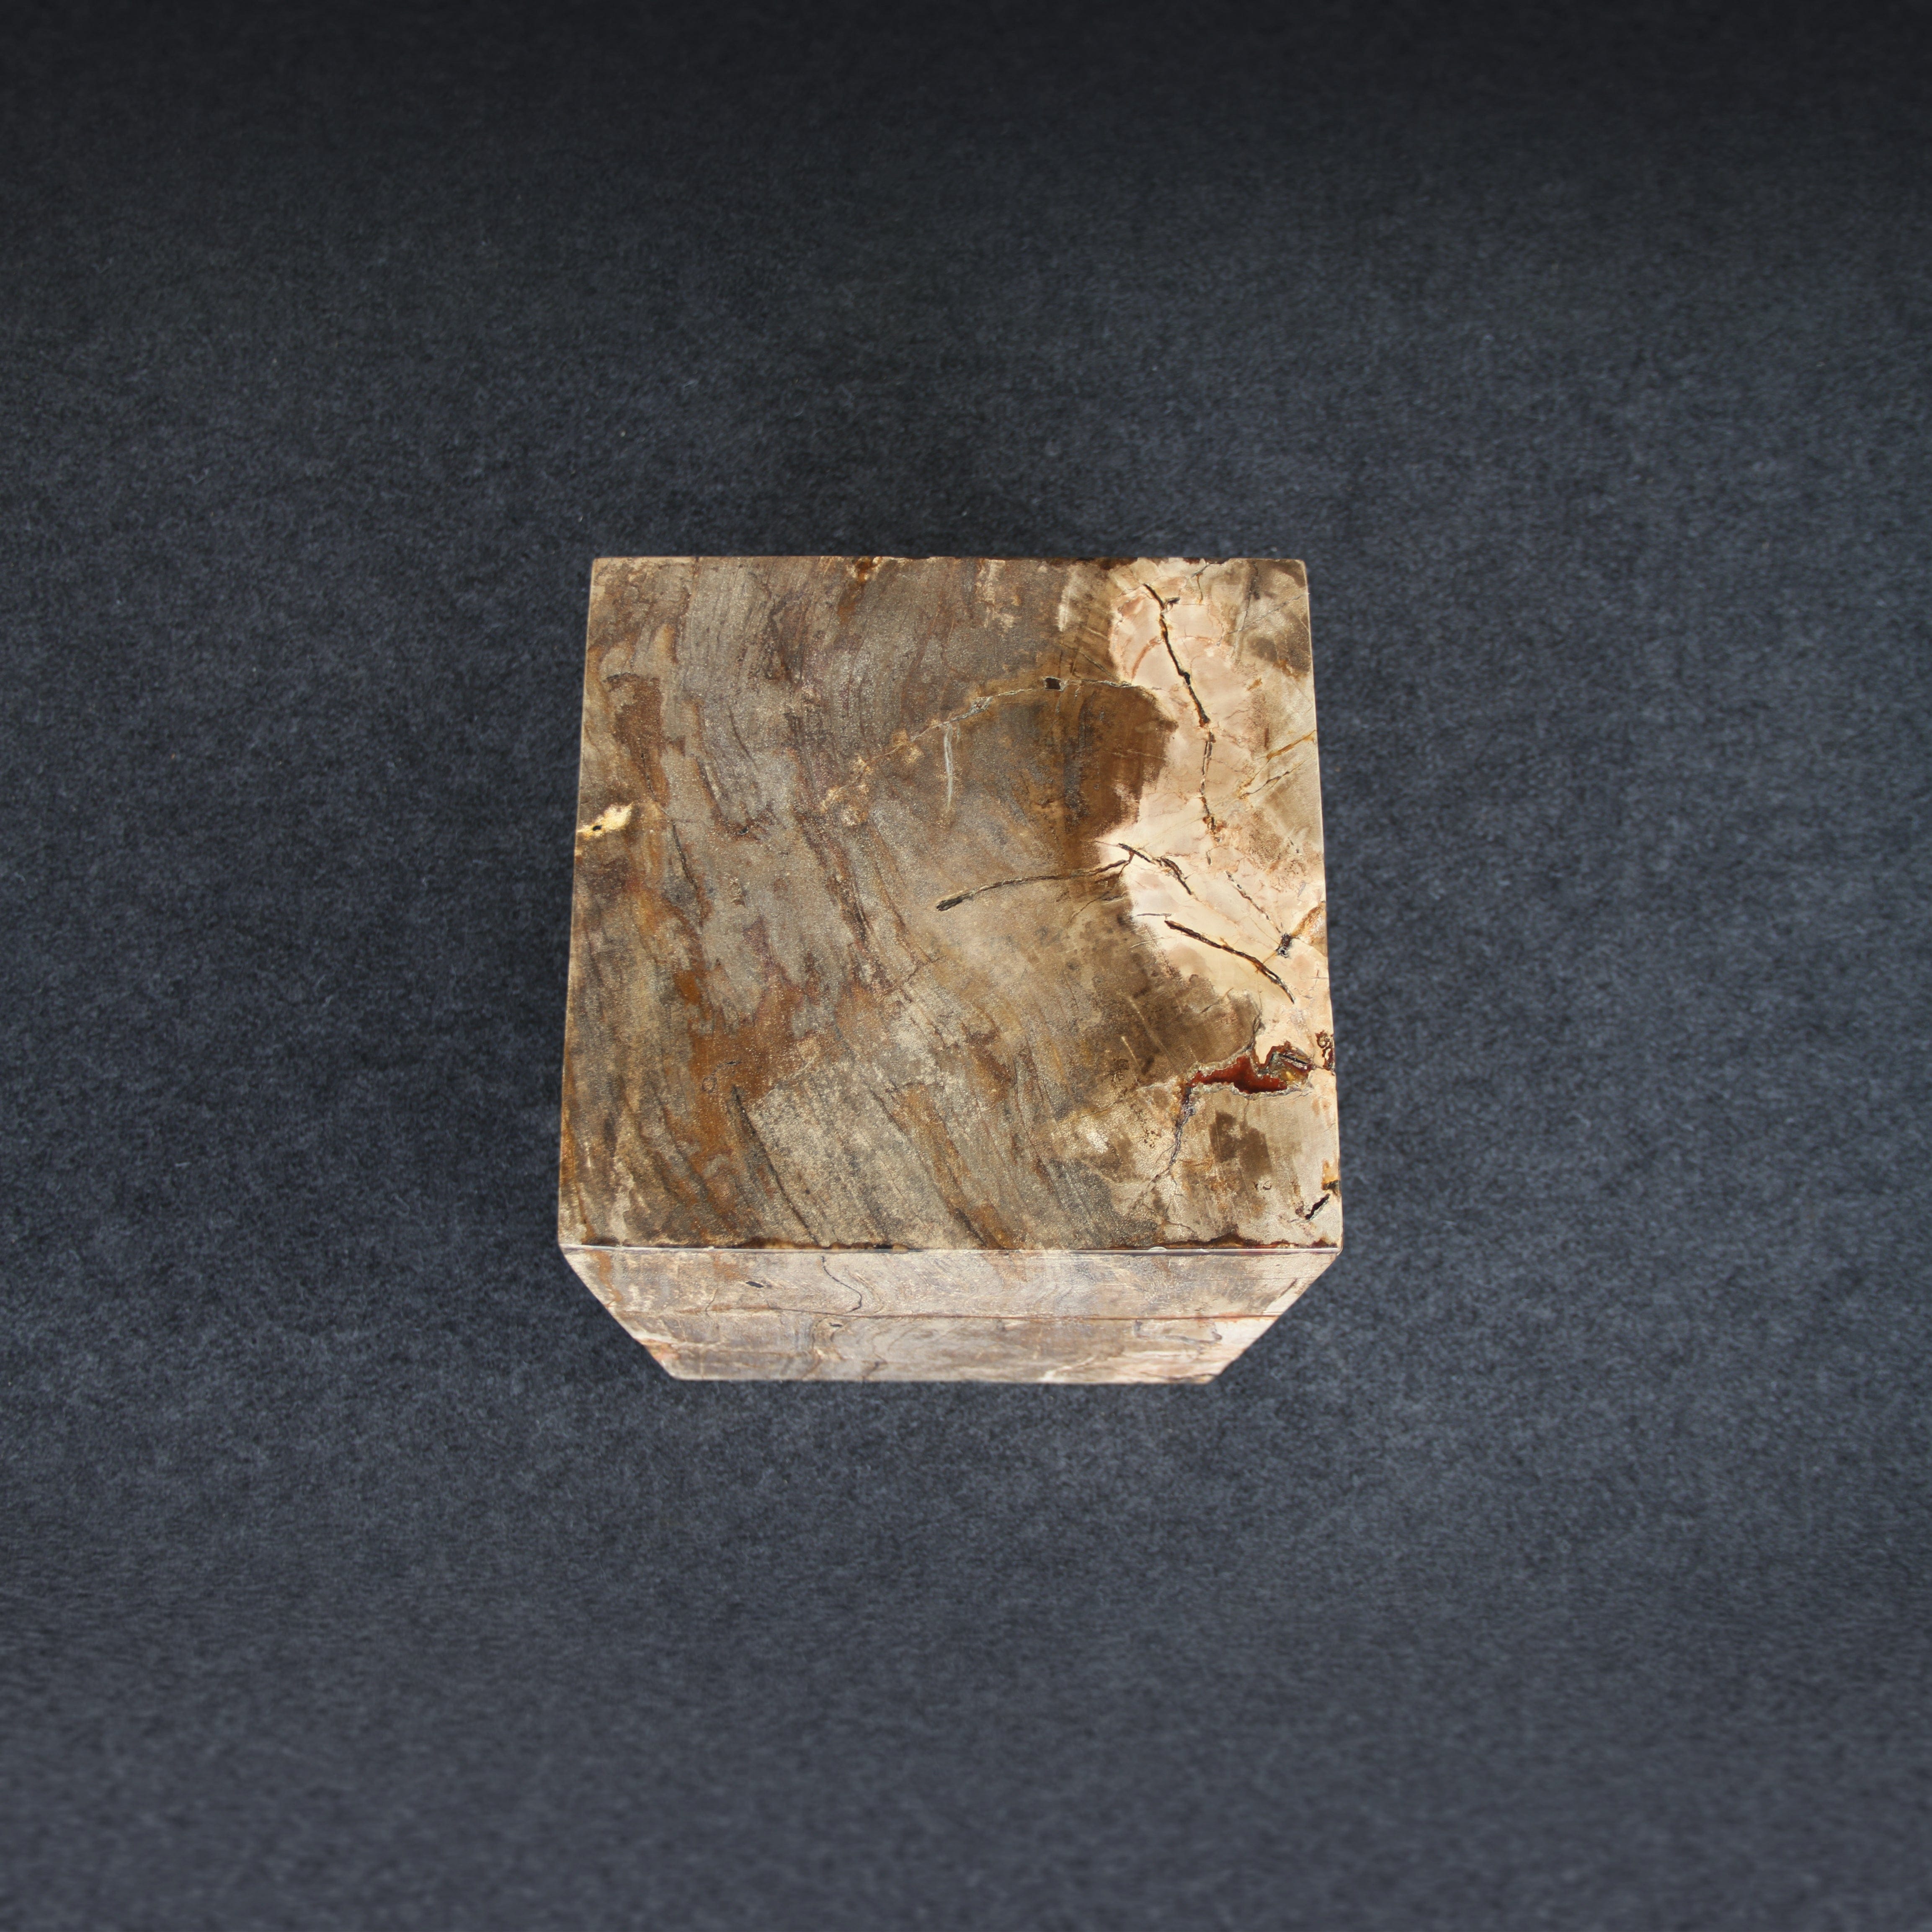 Kalifano Petrified Wood Petrified Wood Square Stump / Stool 16" / 198 lbs PWSS6200.007